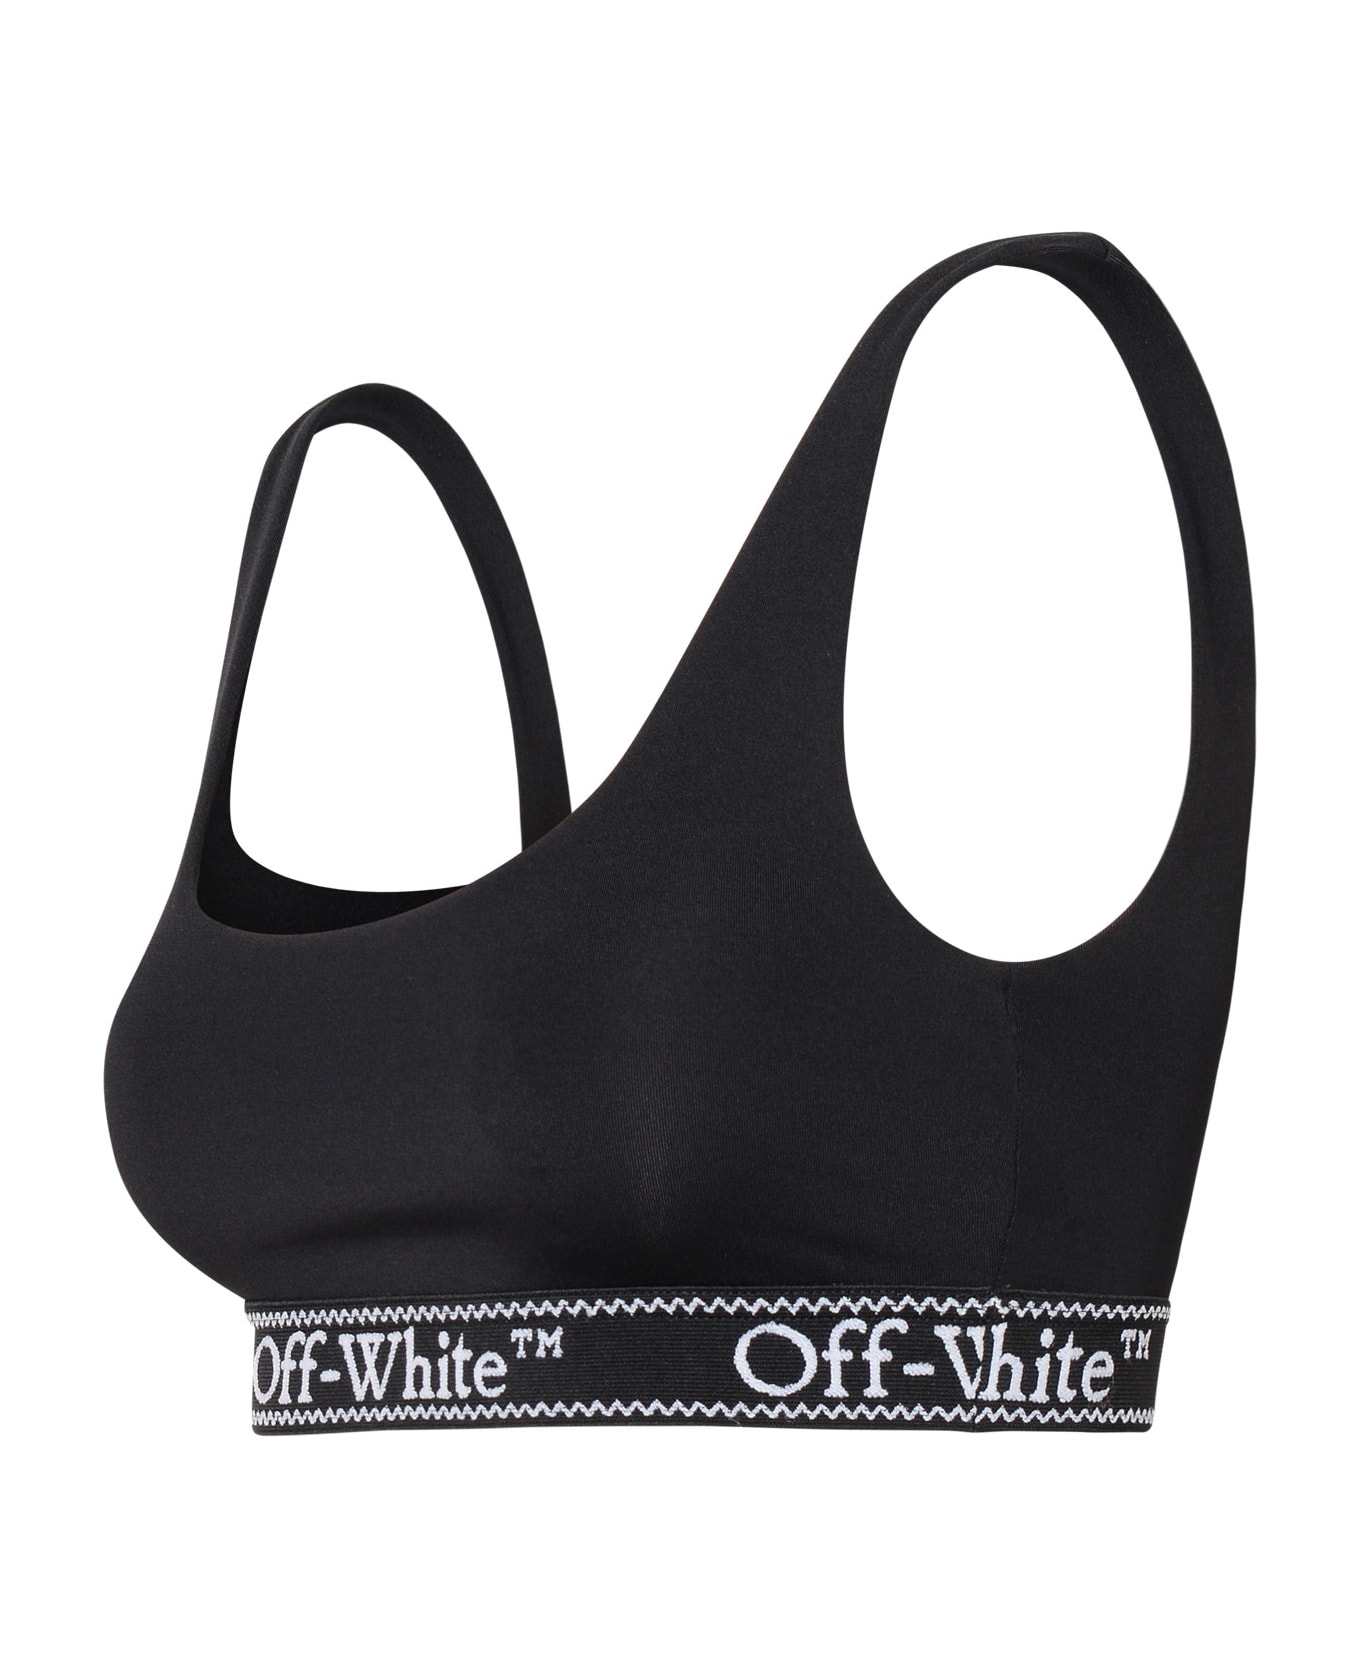 Off-White Sporty Top In Black Nylon Blend - Black White ブラジャー